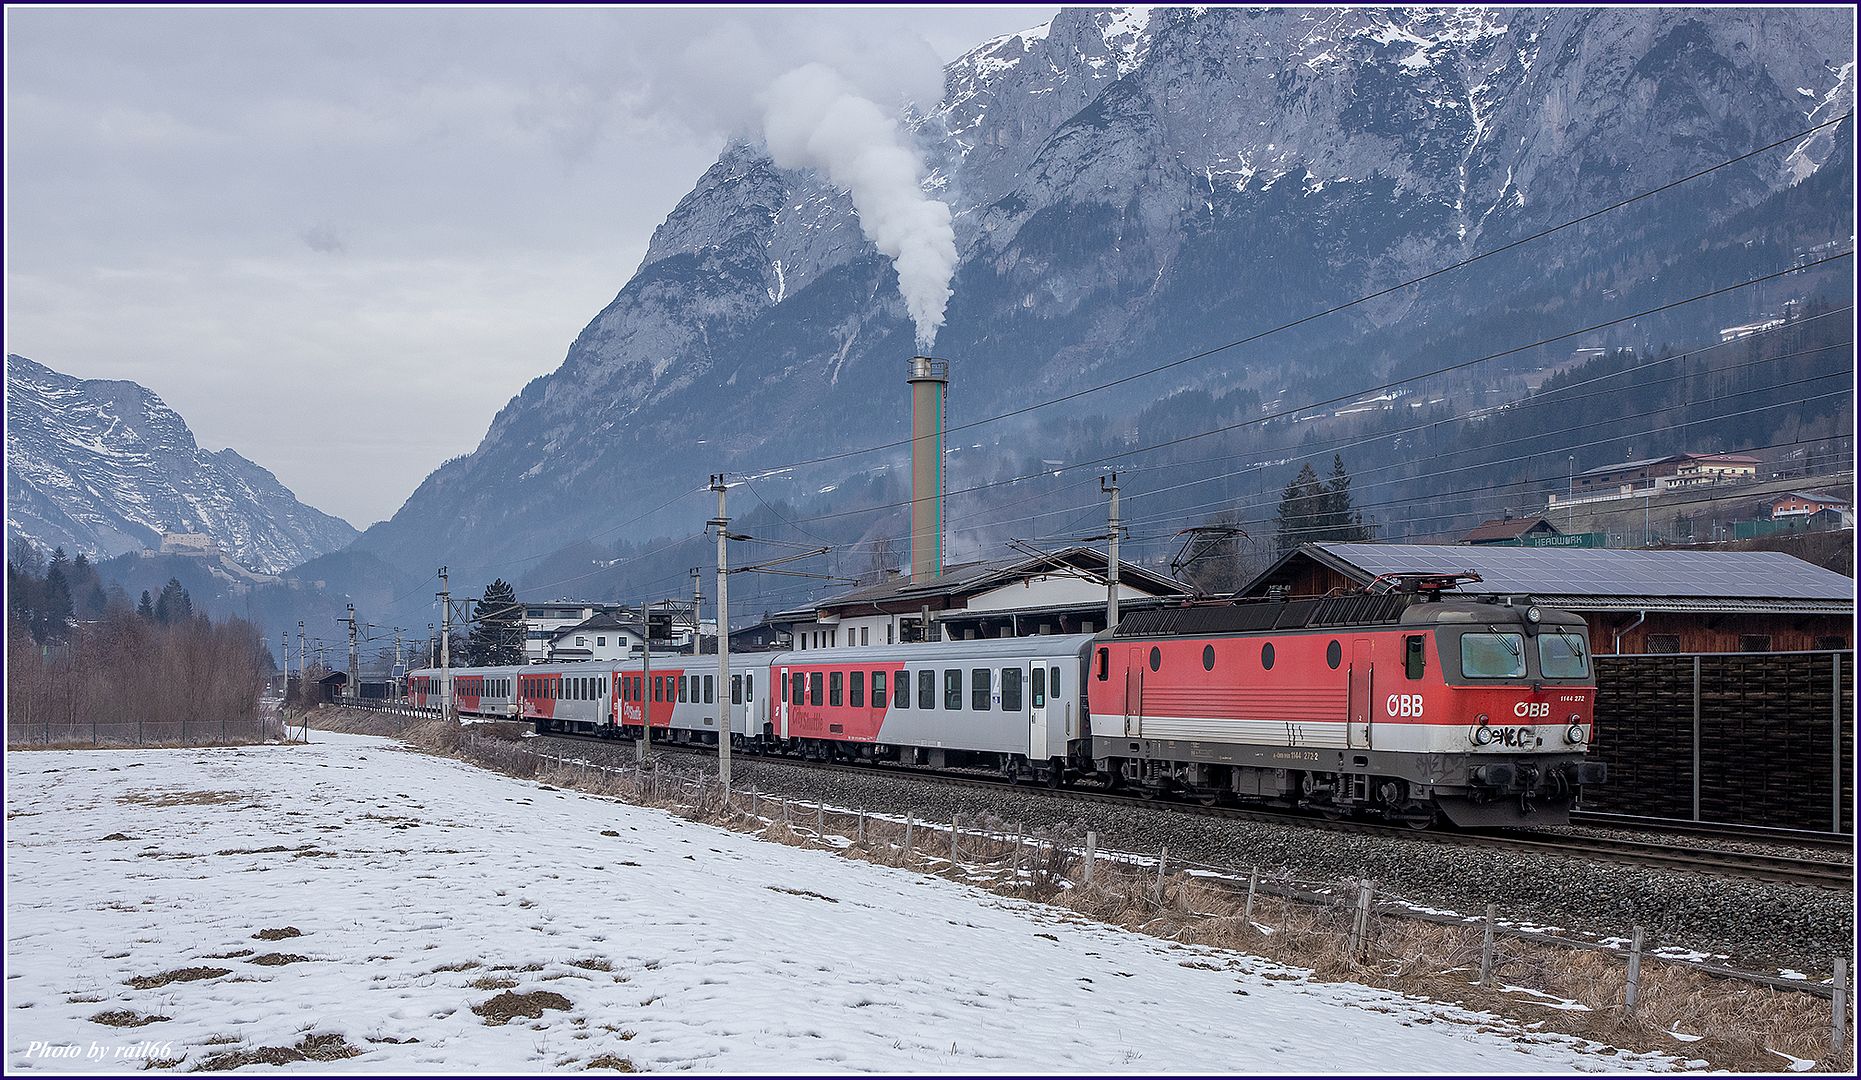 https://i51.photobucket.com/albums/f385/rail66_1/westbahn/salzburg/200/200_02_04143_zpsxw0h2ylb.jpg